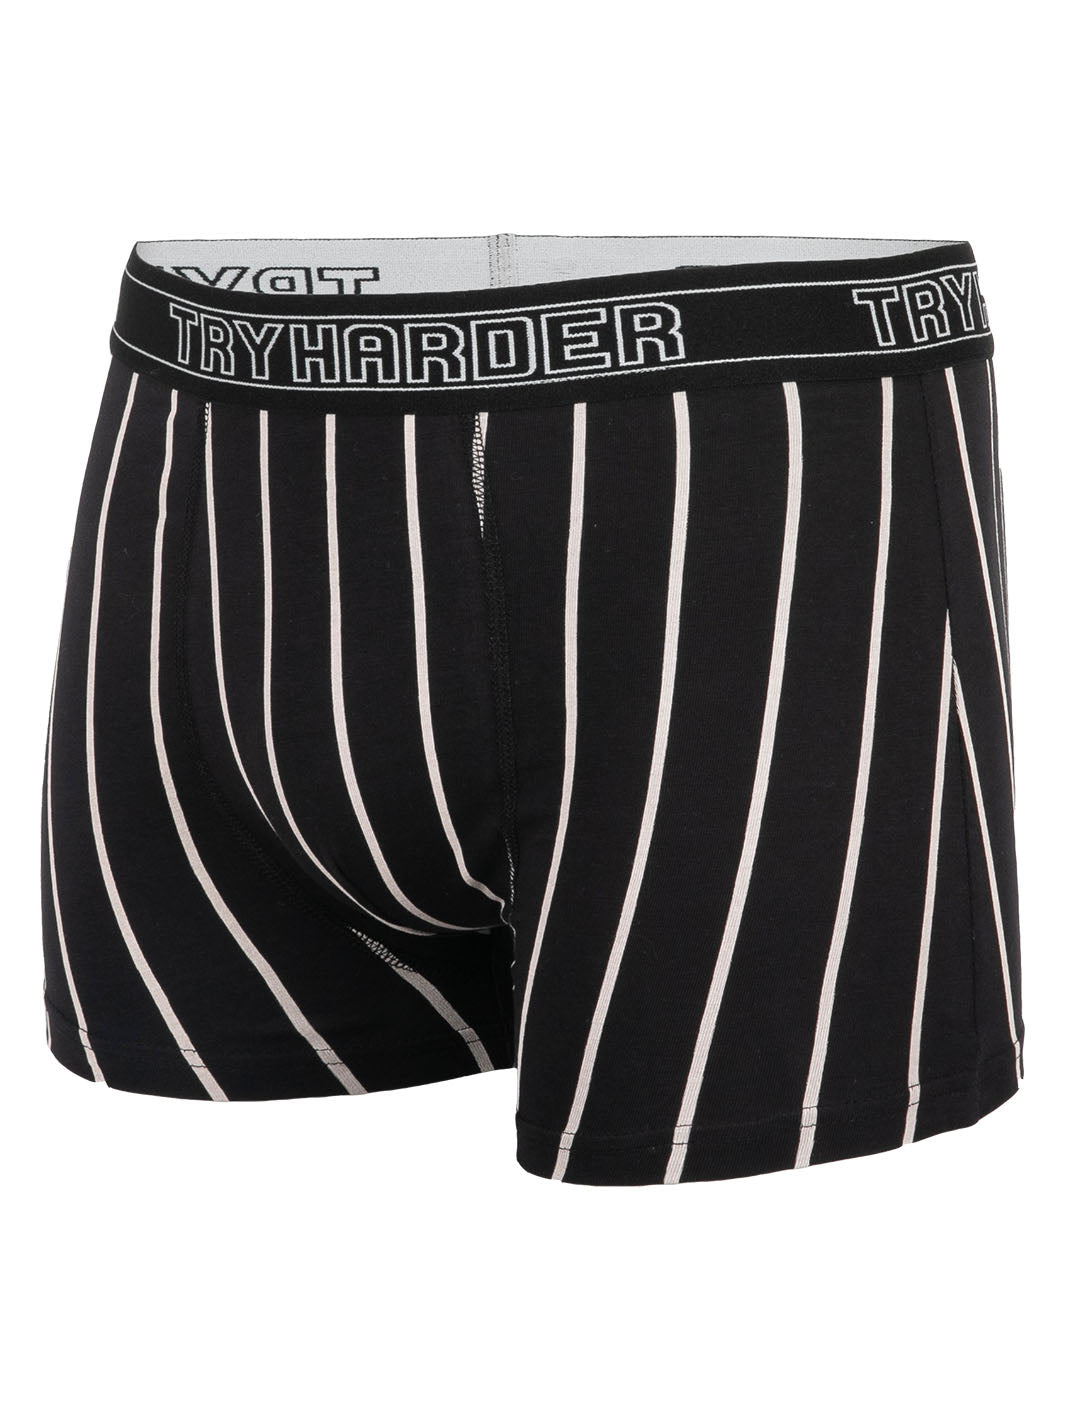 TRYHARDER - Boxer - Black White stripes 1 pack